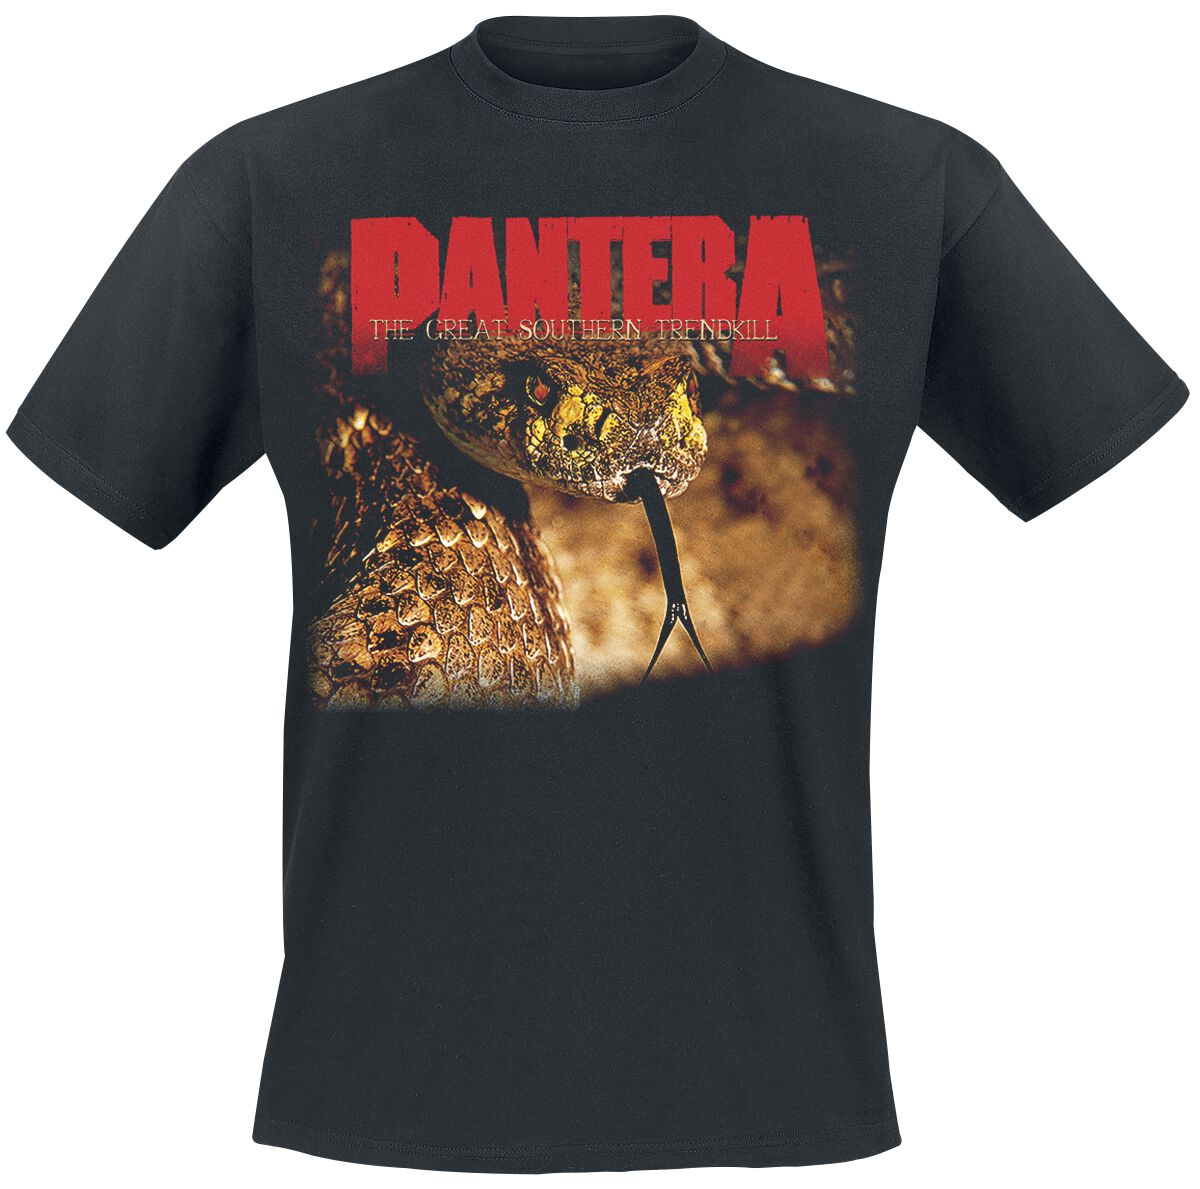 Pantera T-Shirt - The Great Southern Trendkill - S bis XXL - für Männer - Größe XXL - schwarz  - Lizenziertes Merchandise!